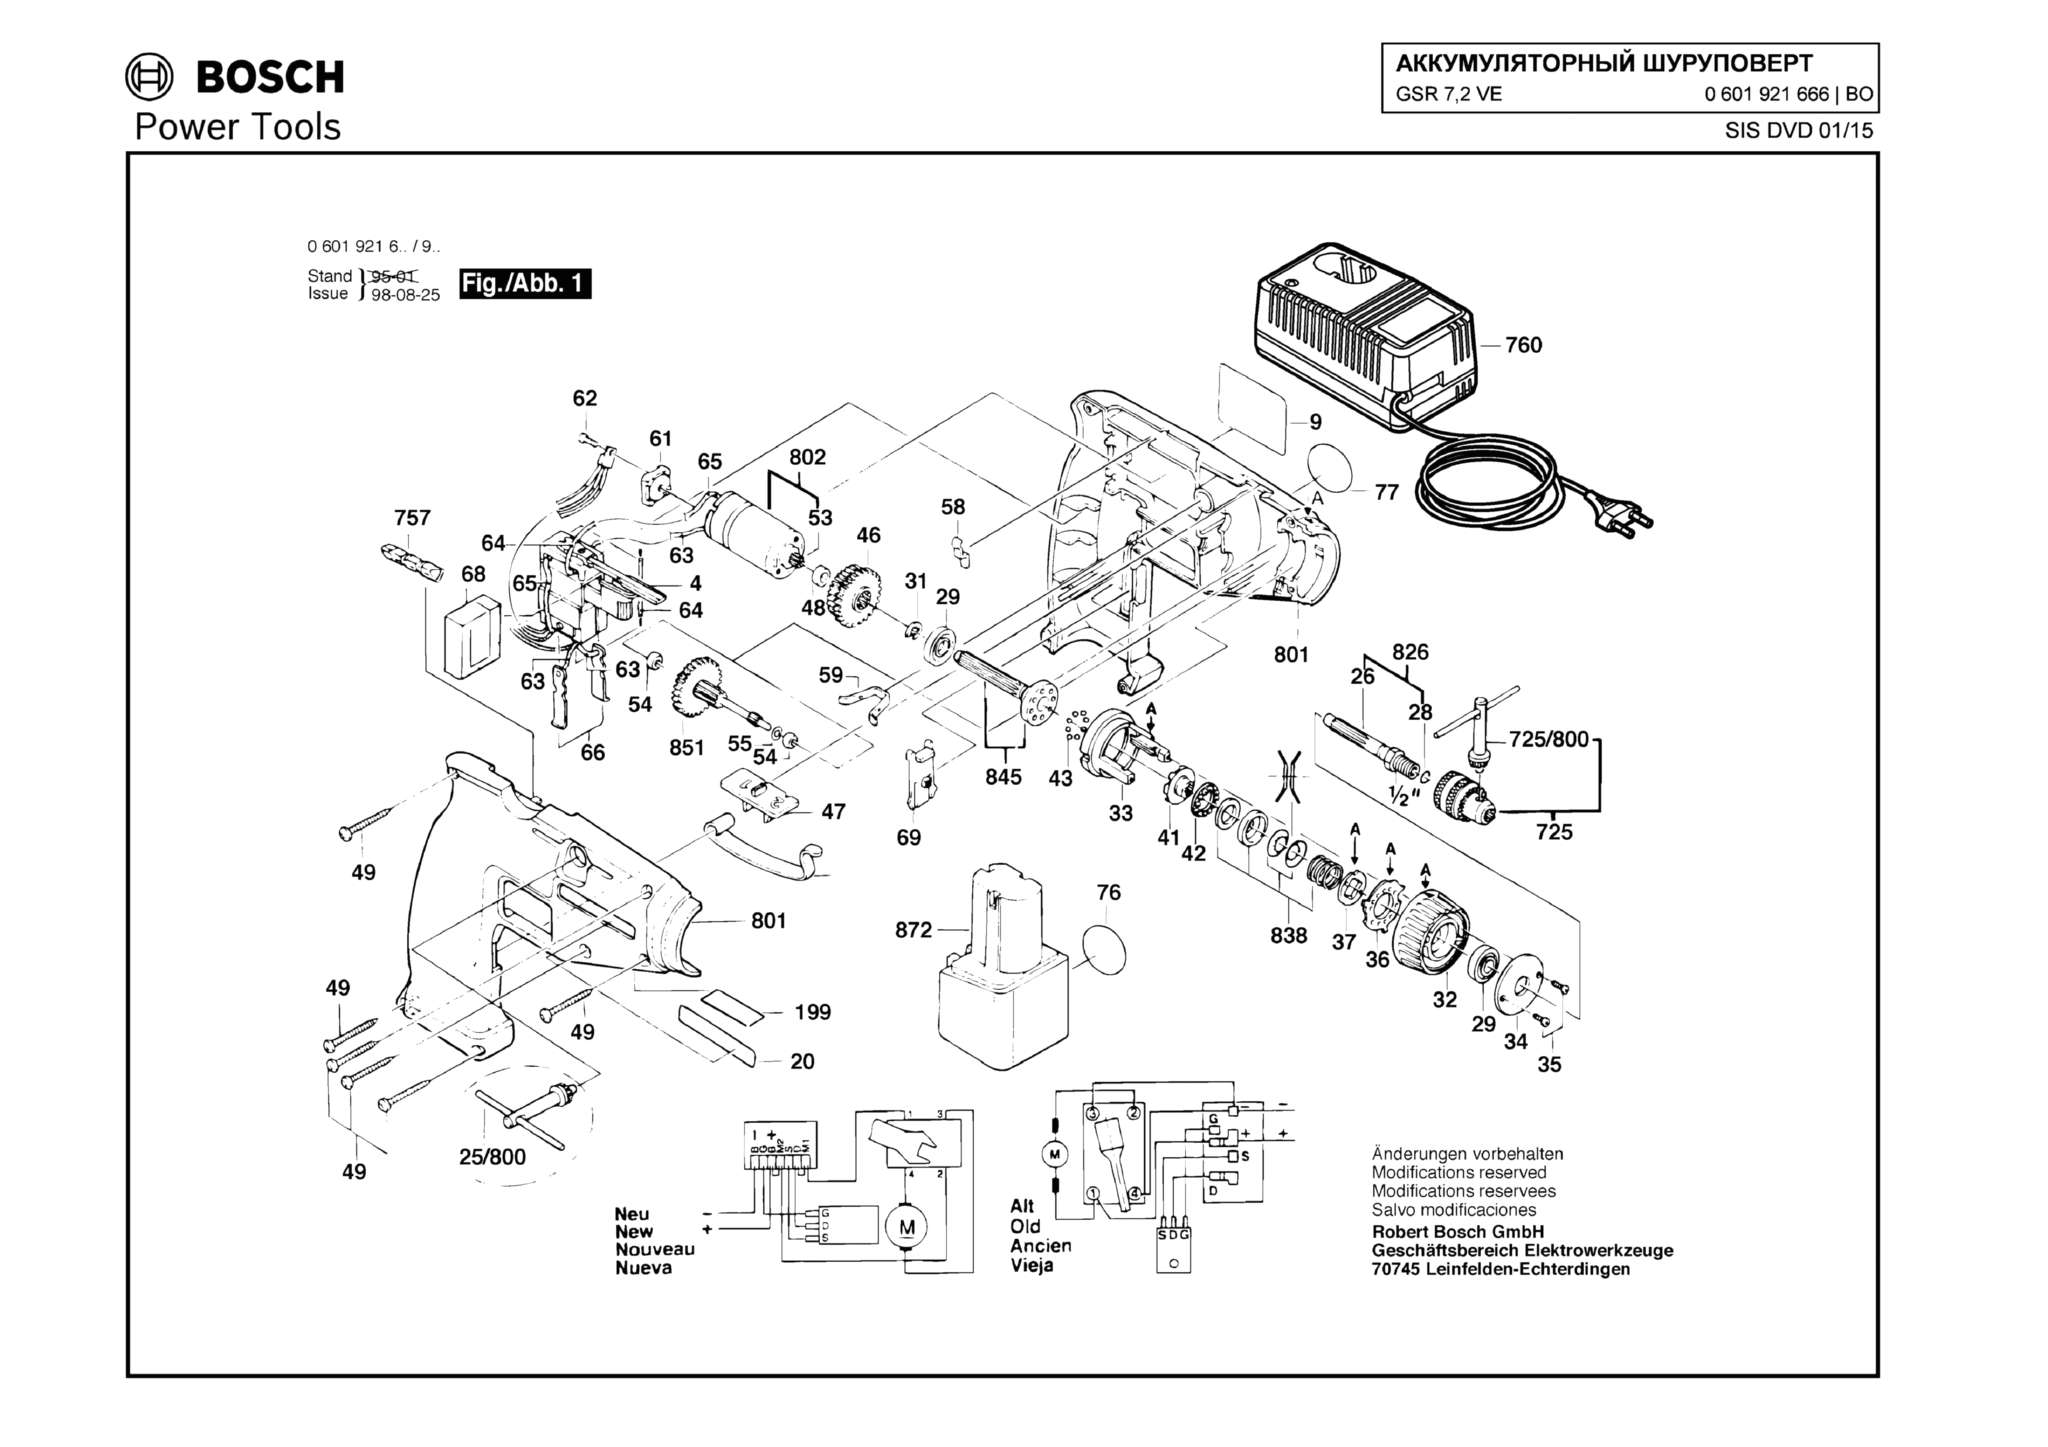 Запчасти, схема и деталировка Bosch GSR 7,2 VE (ТИП 0601921666)